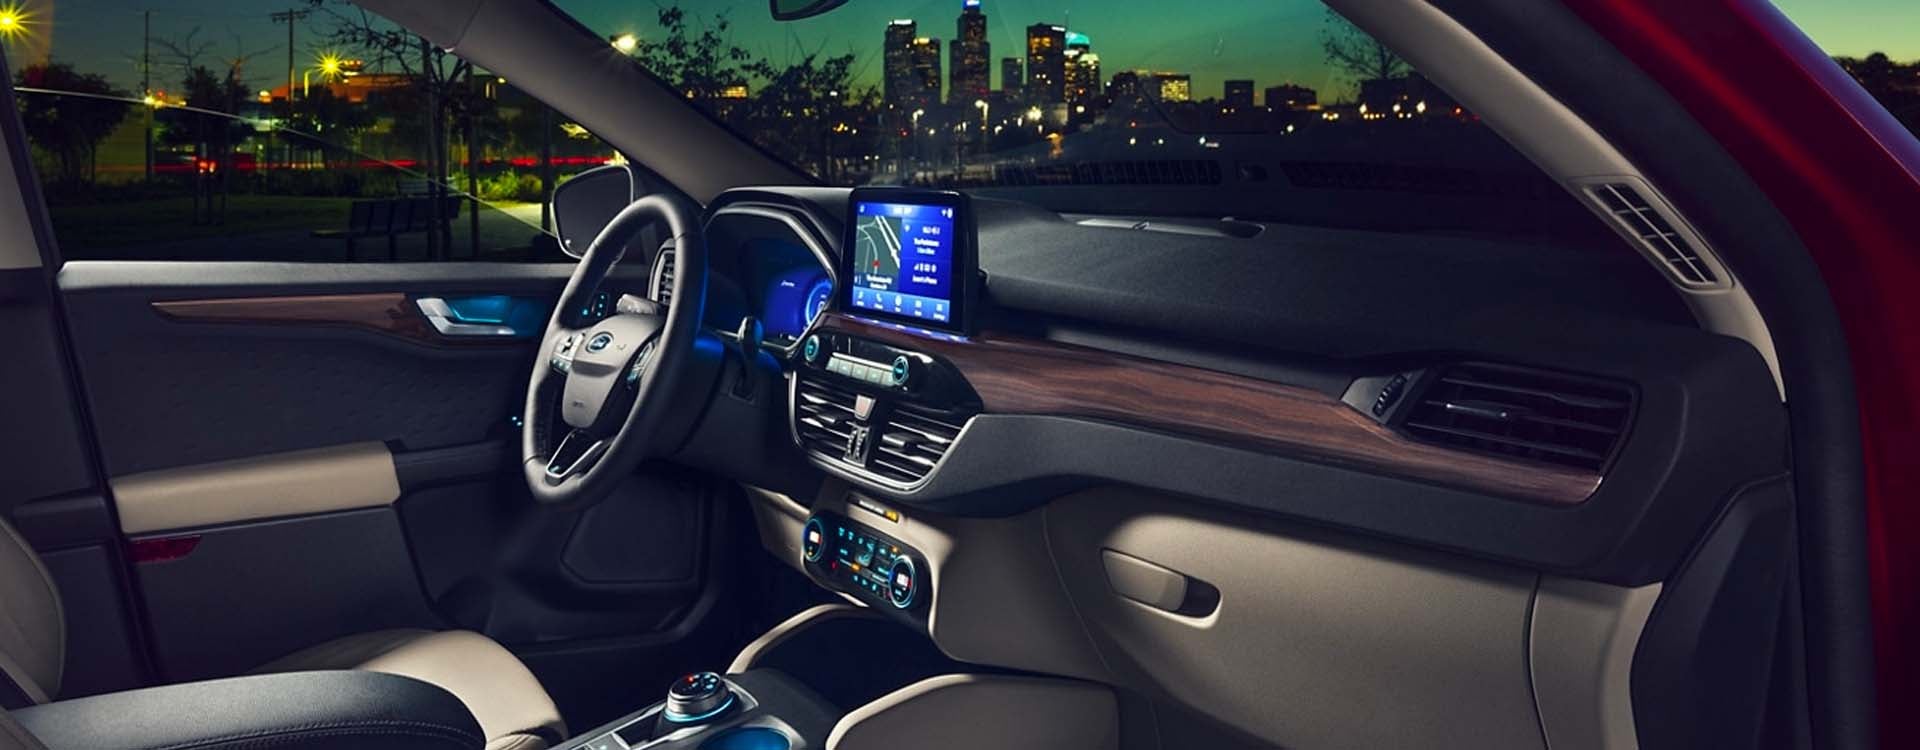 2021 Ford Escape interior